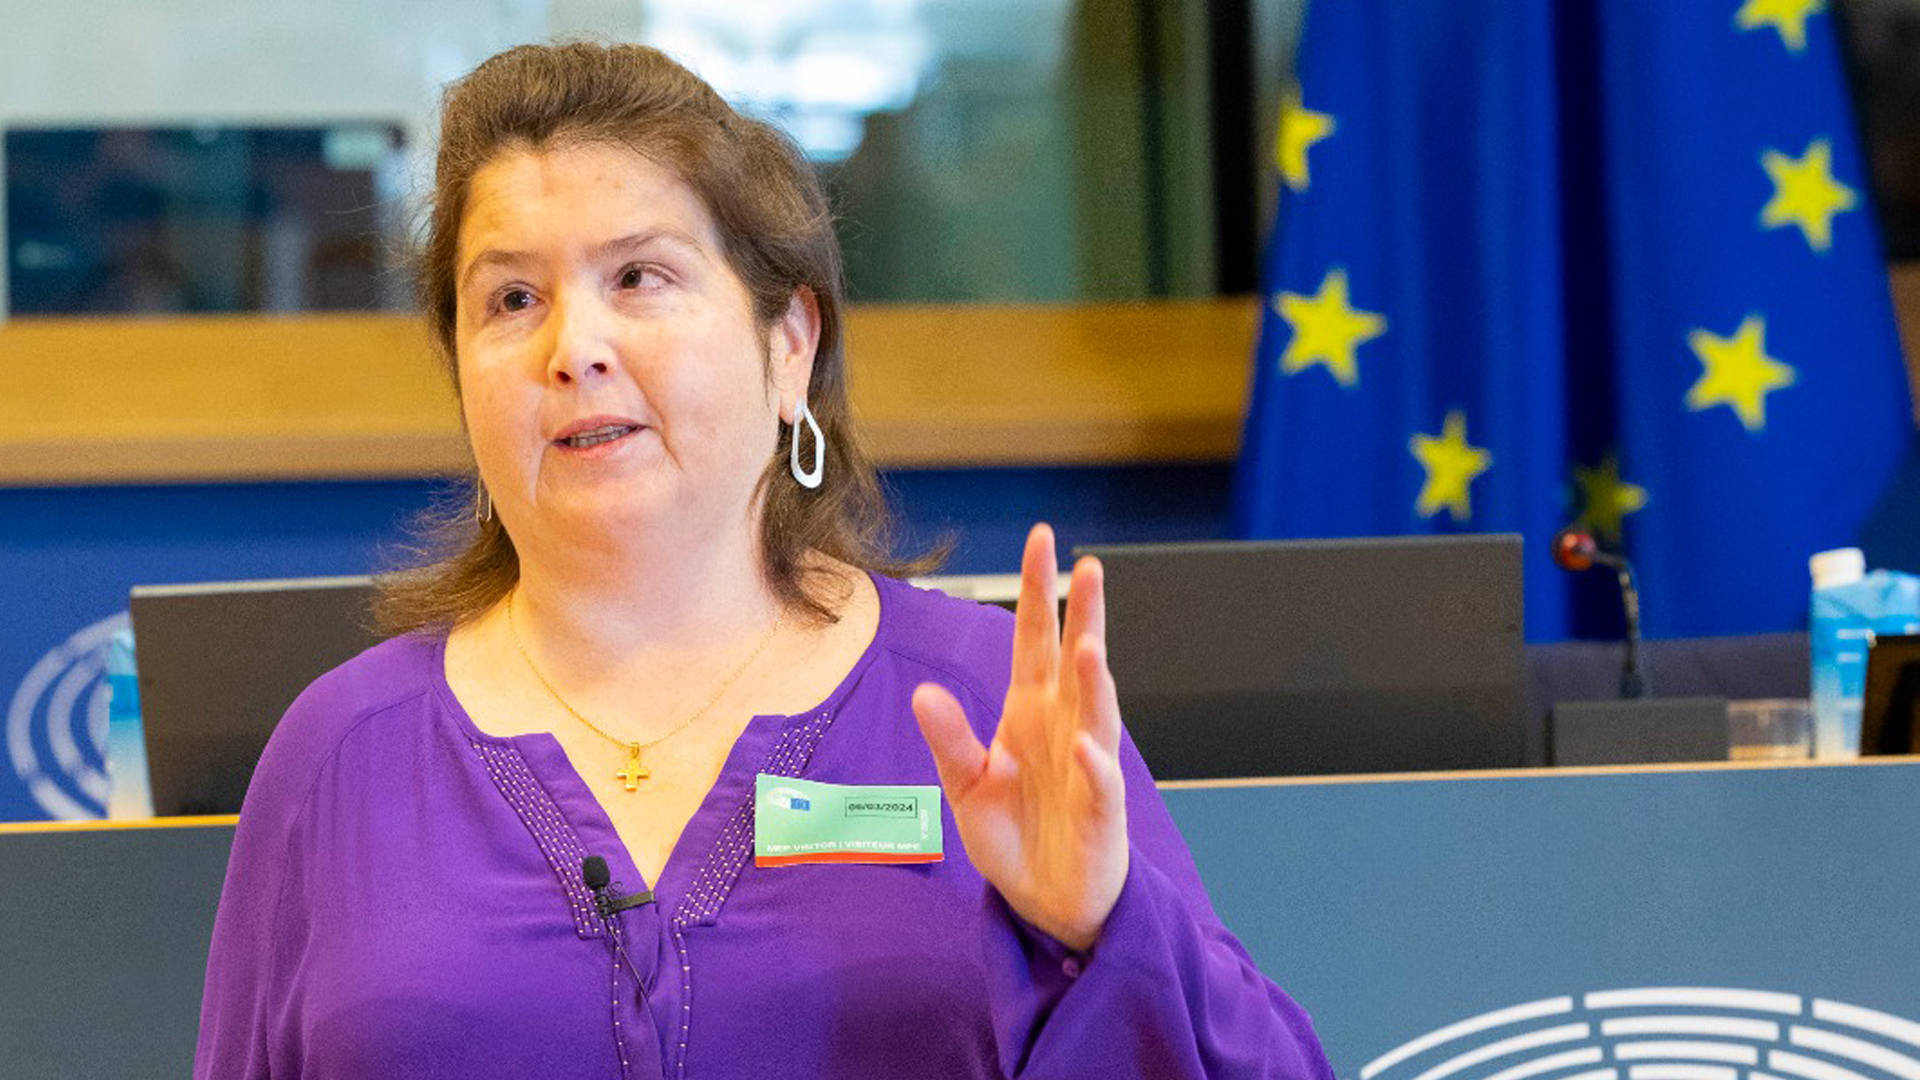 Bárbara Palau explicando la simulación del voto con el código QR en el Parlamento Europeo